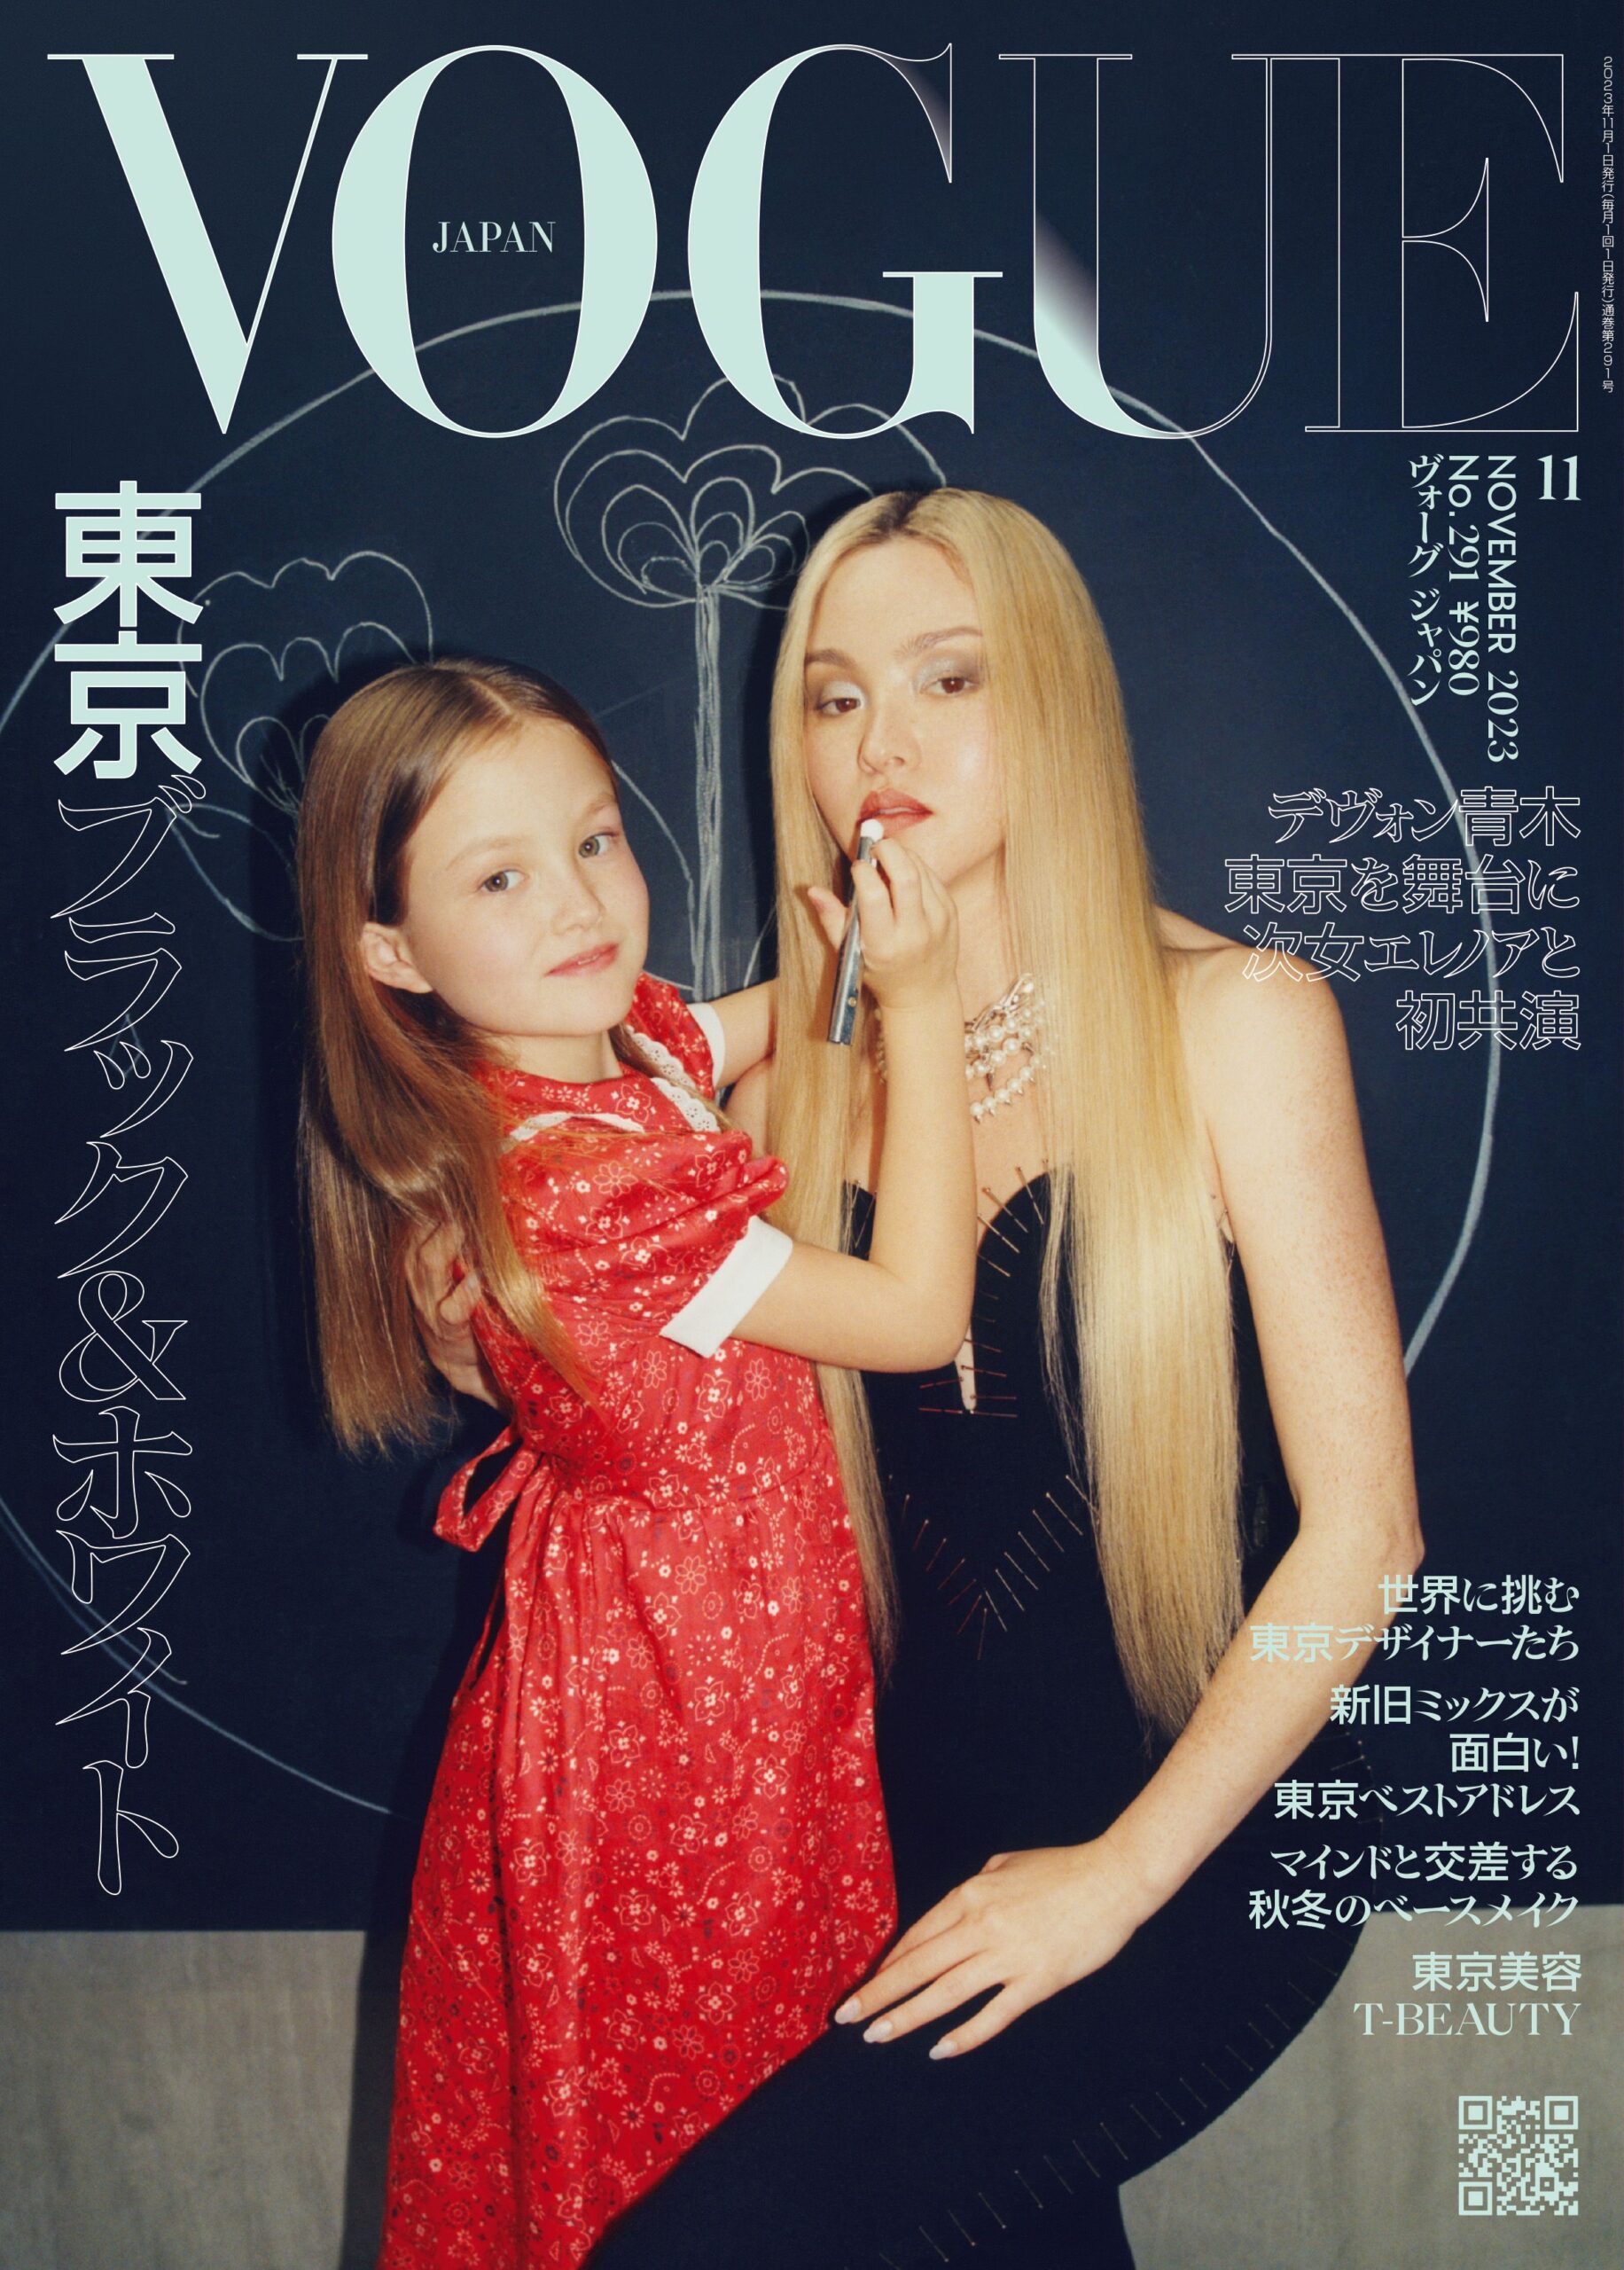 Marc's Muses (Vogue Japan)